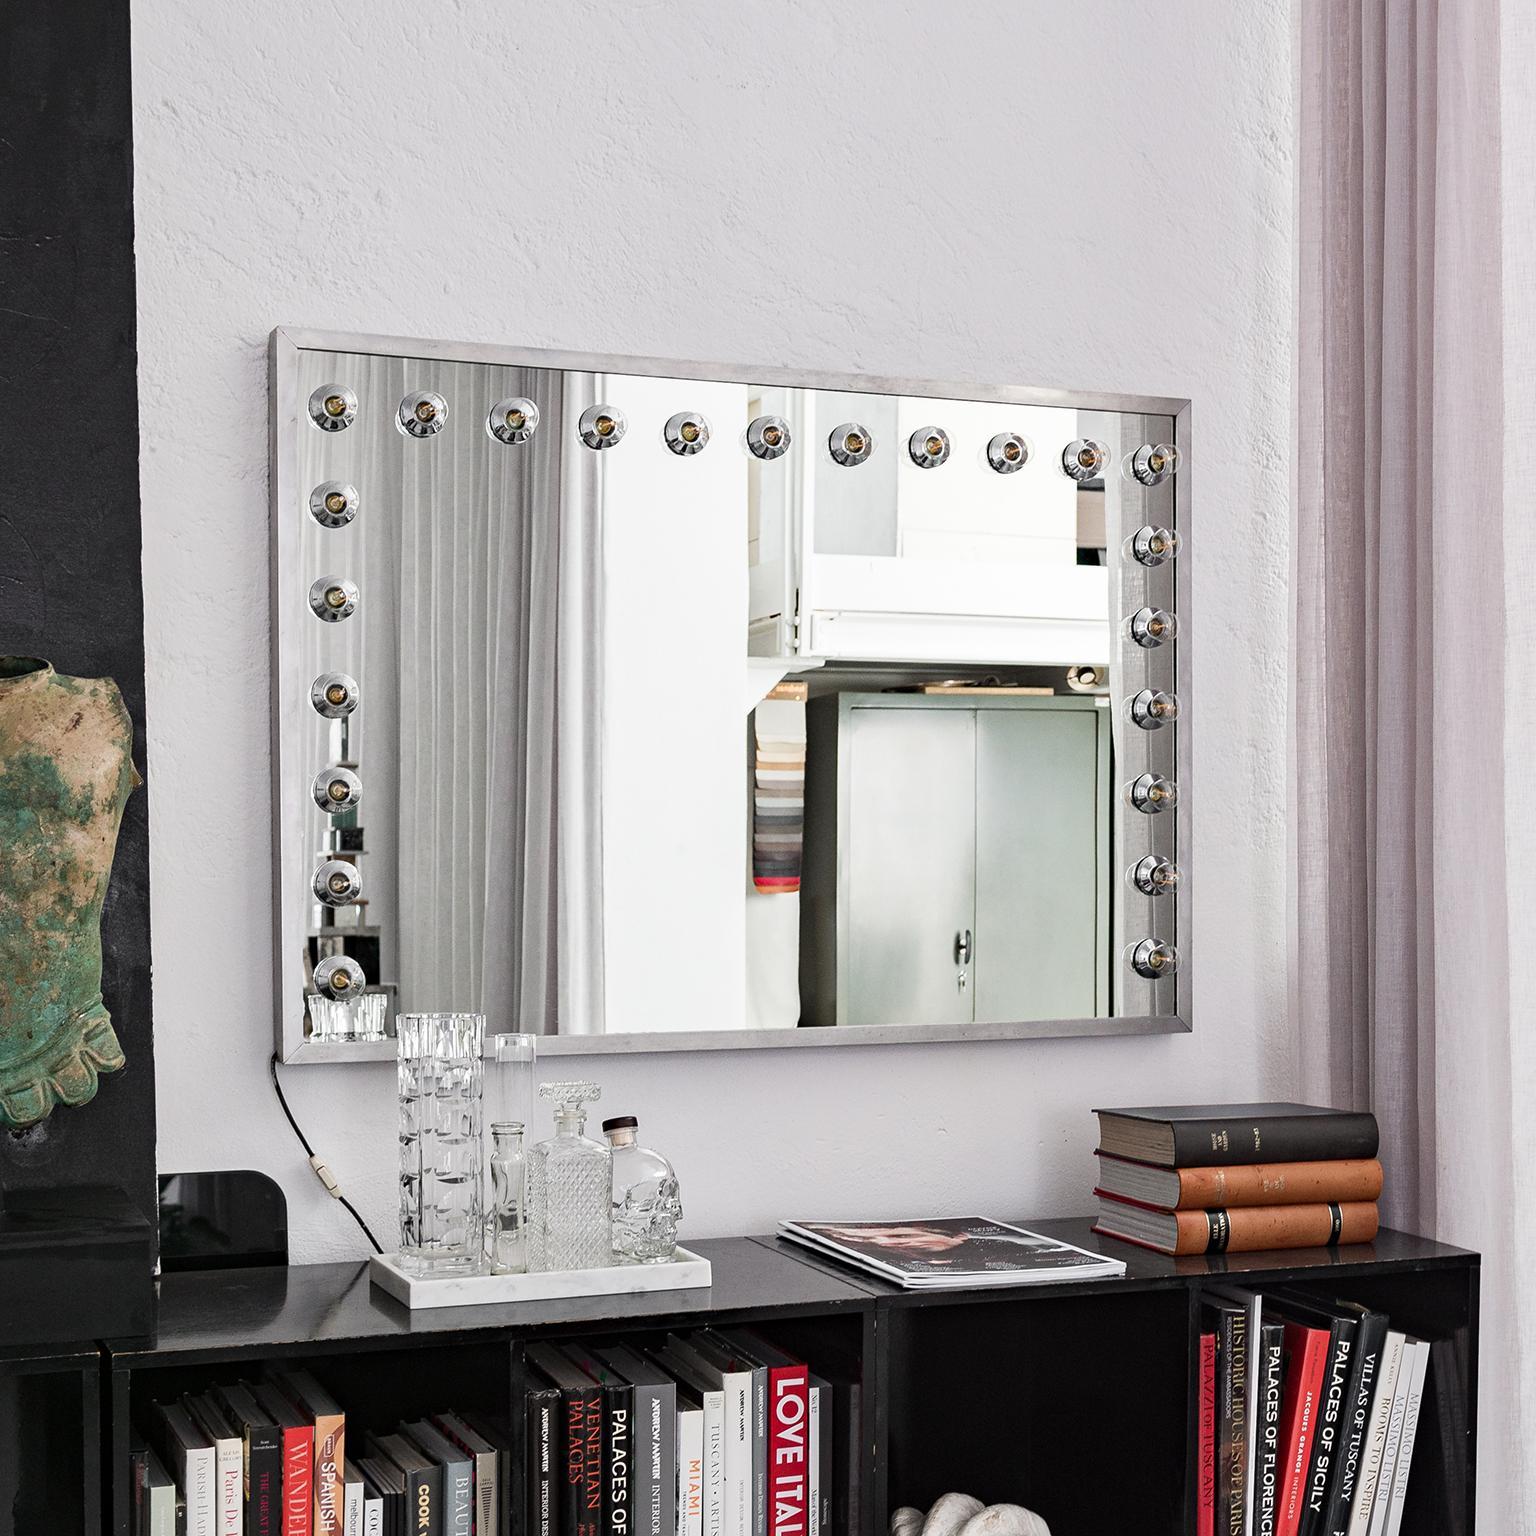 Nous vous proposons un miroir de courtoisie italien vintage, très probablement des années 1970, équipé de 23 lumières montées sur trois bords du miroir. Elle est très grande et conservée dans de très bonnes conditions. Il s'agit d'un complément très